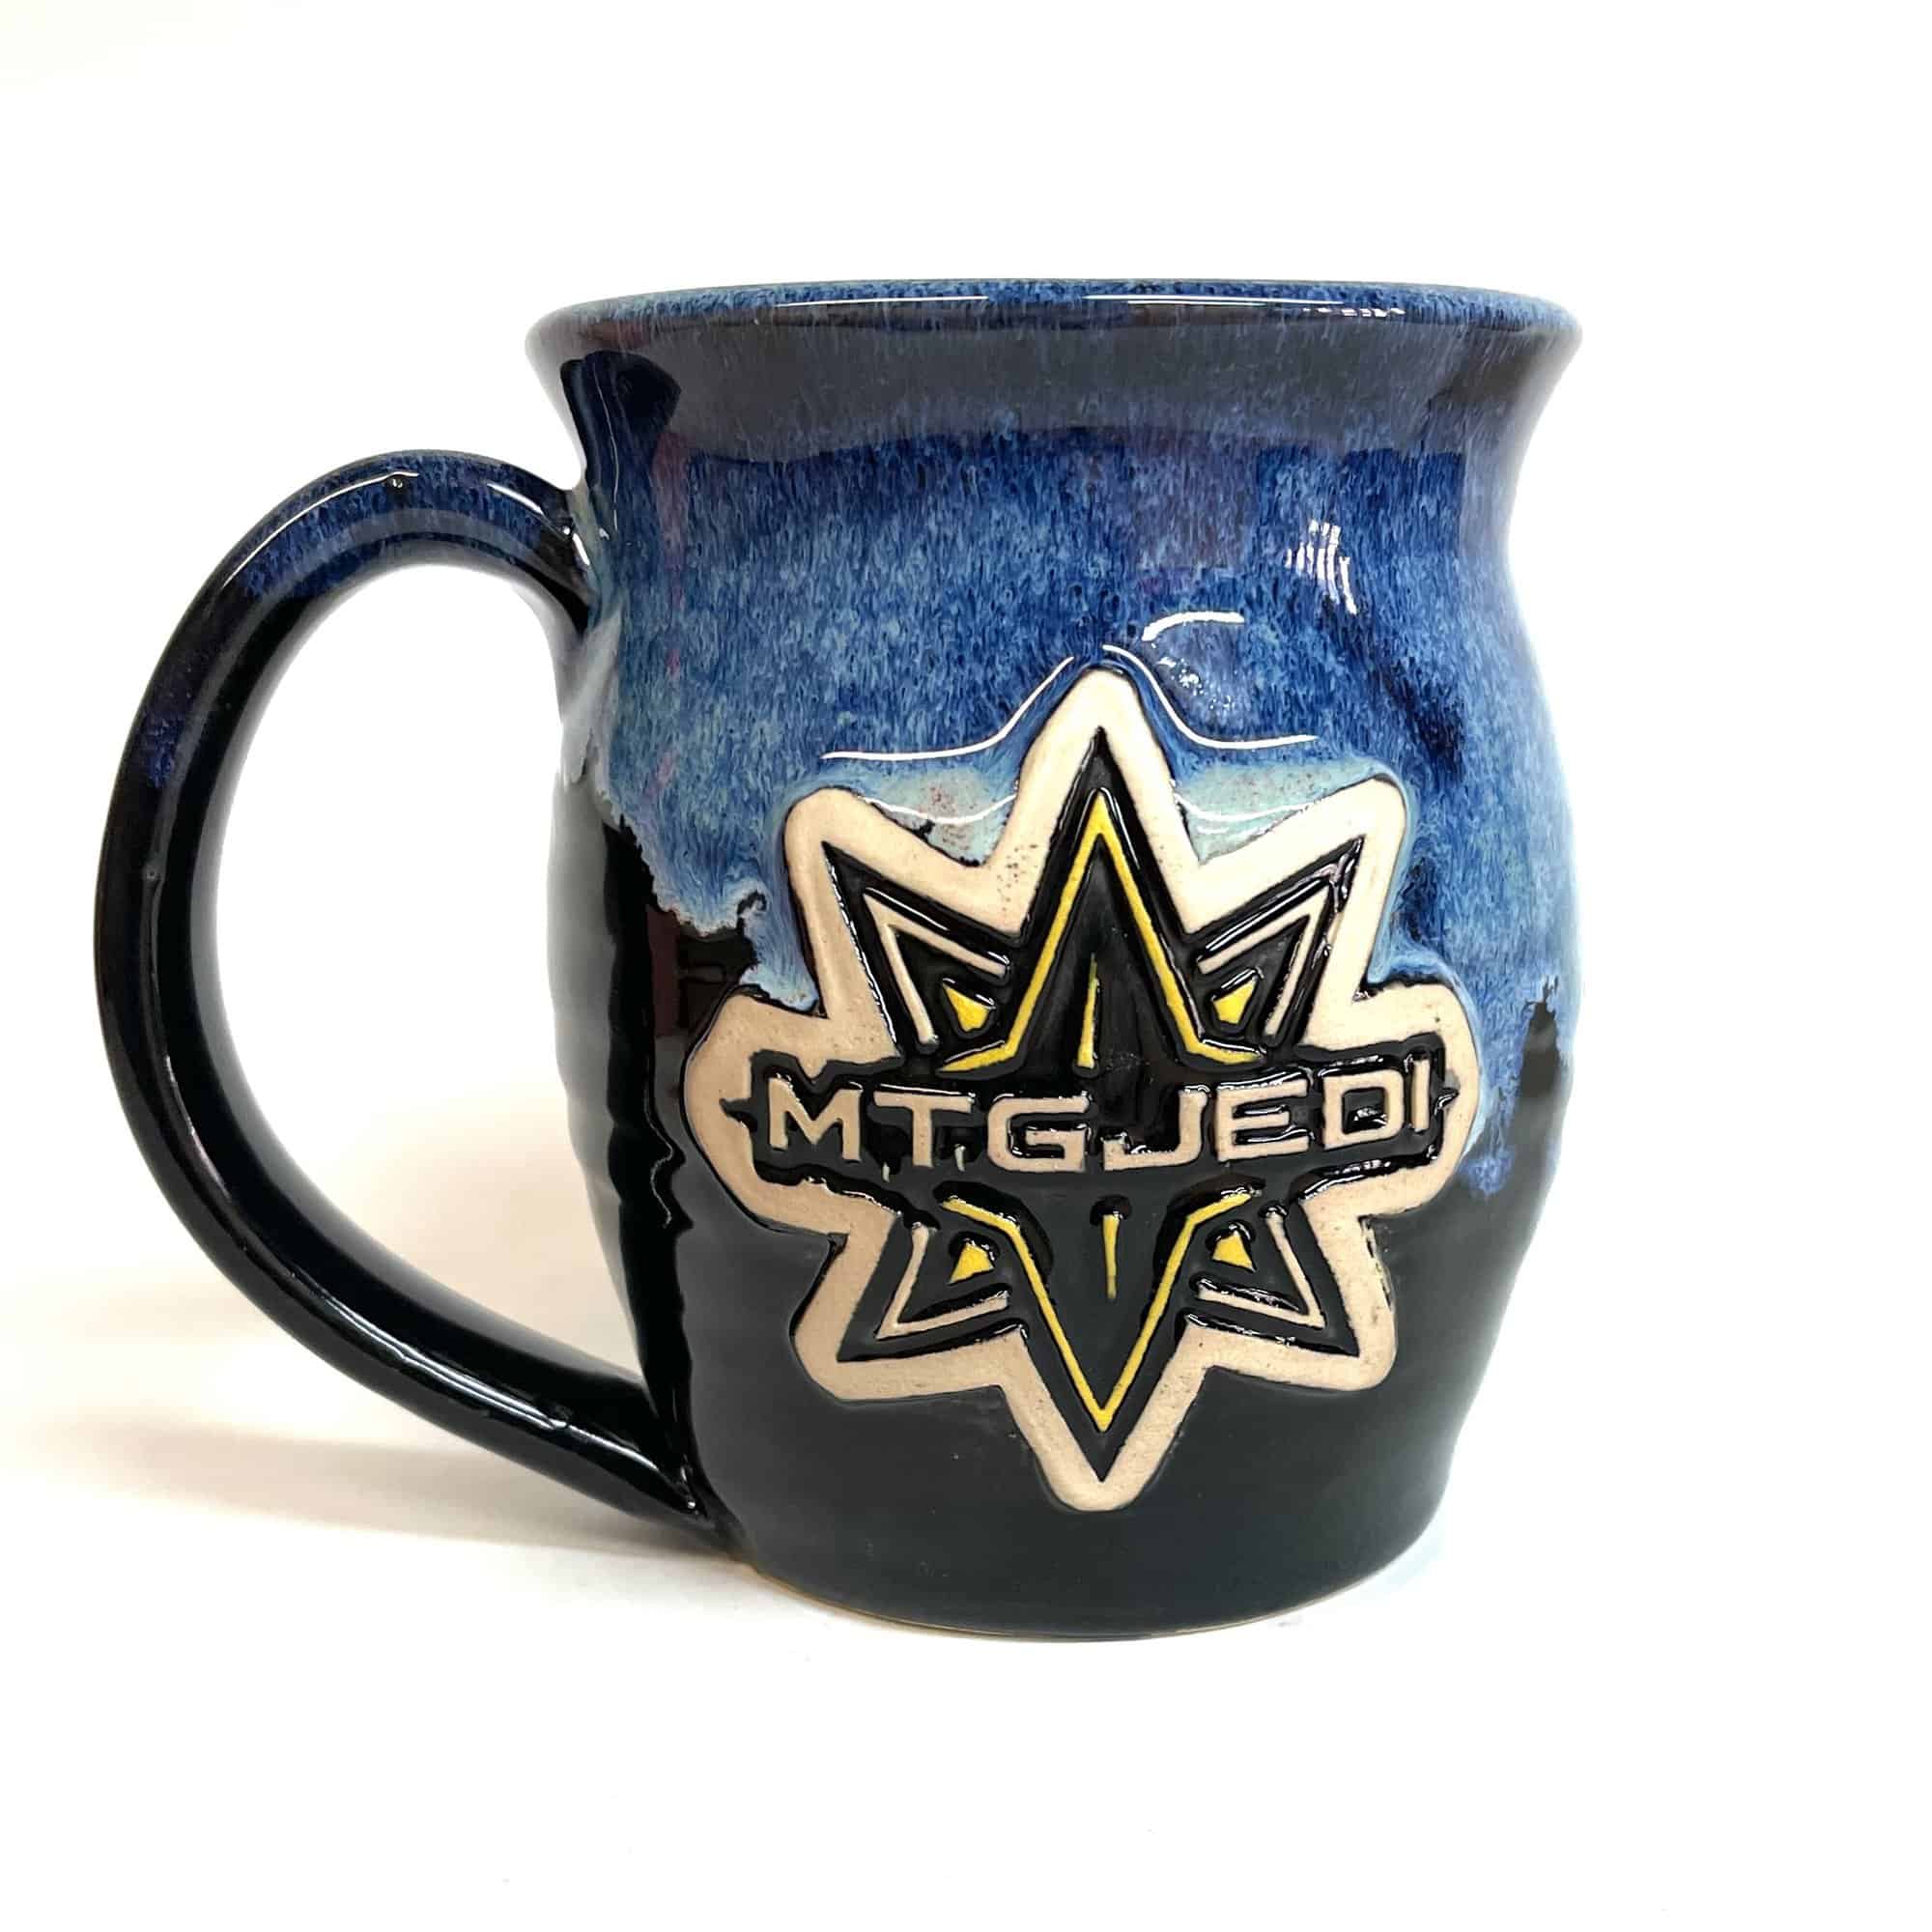 Dallas Cowboys Travel Mug 32 oz